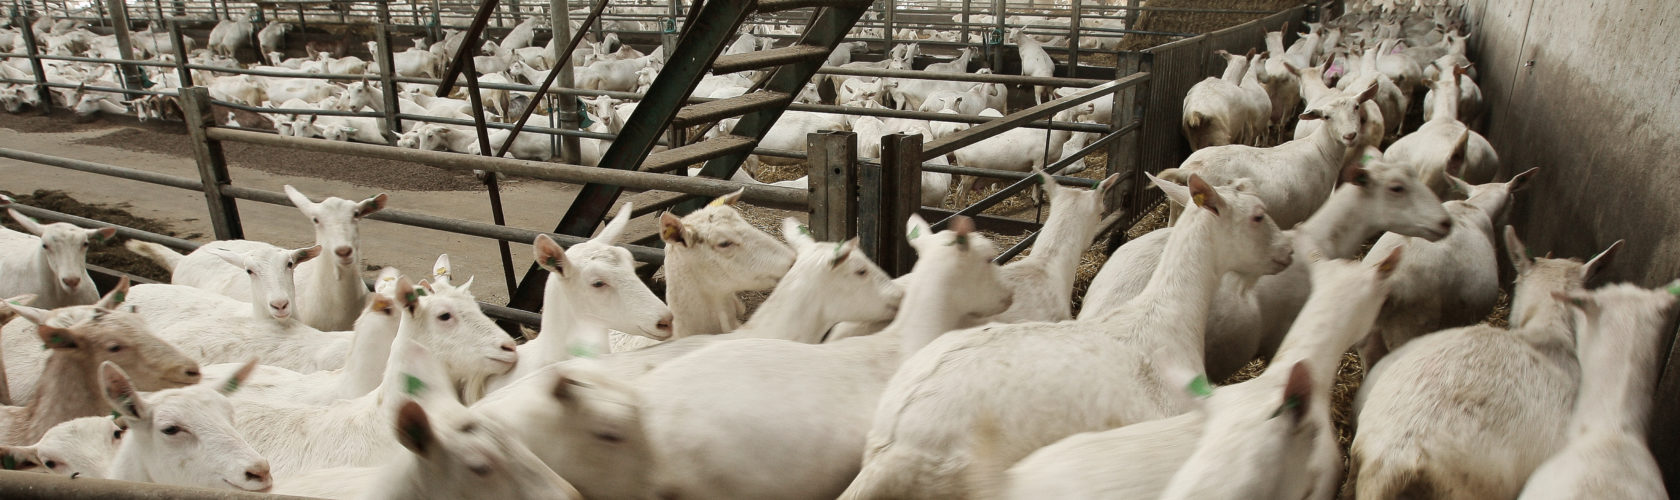 beeld geiten in de vee-industrie